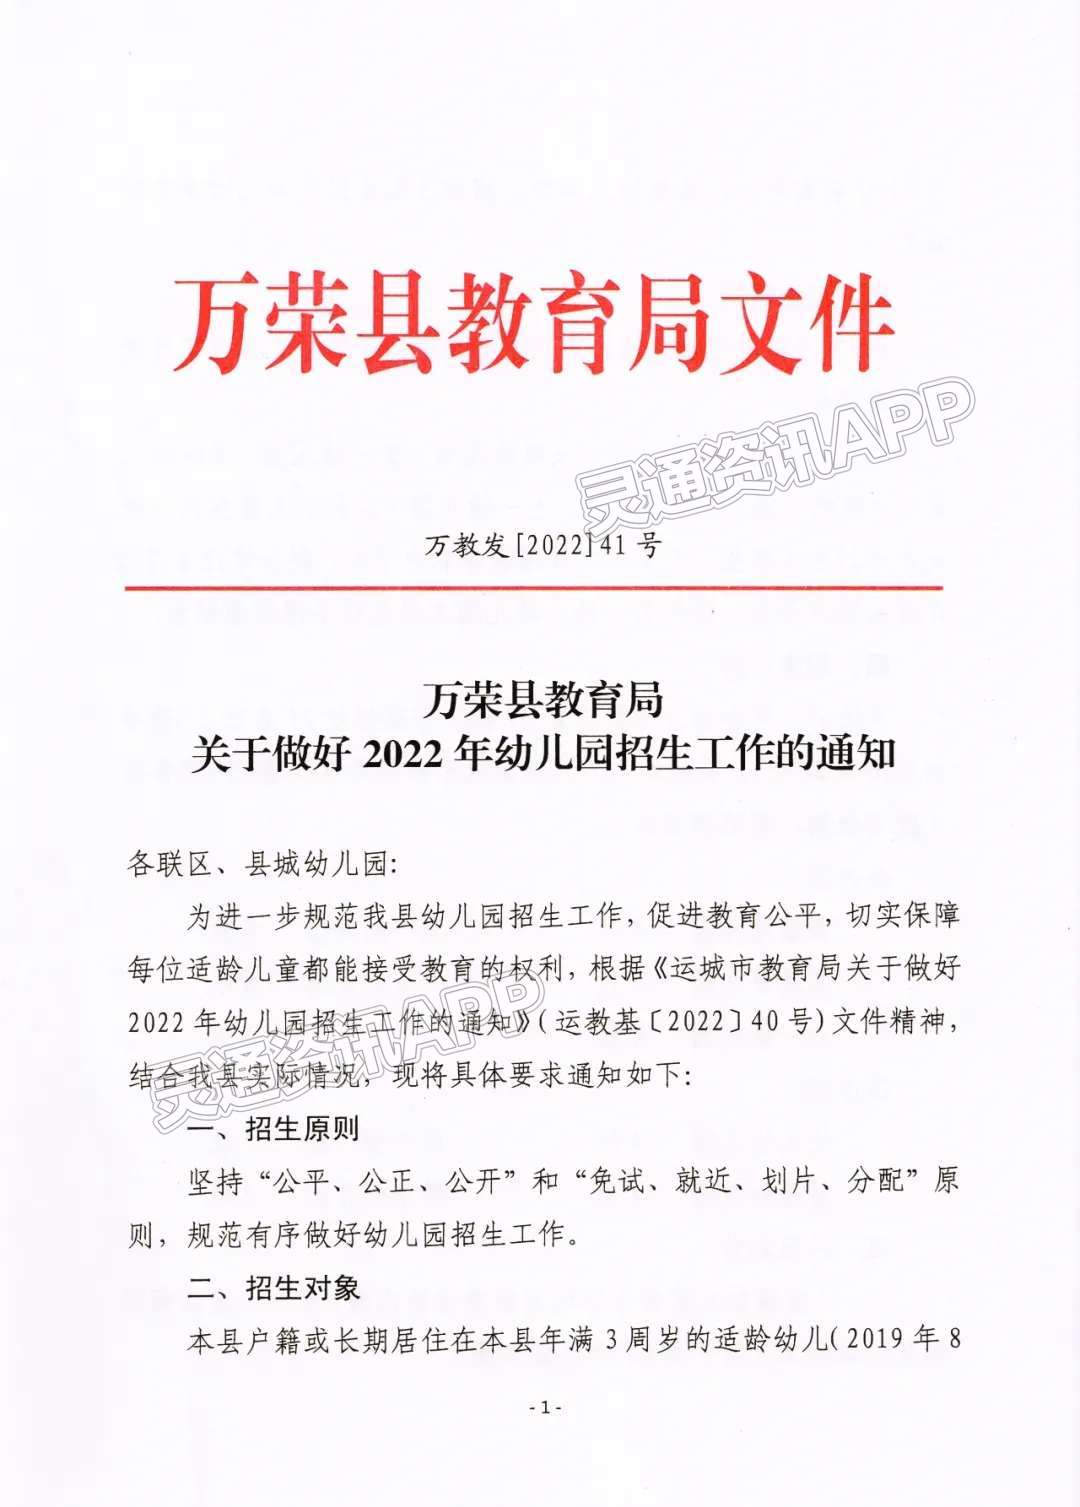 万荣县教育局关于做好2022年幼儿园招生